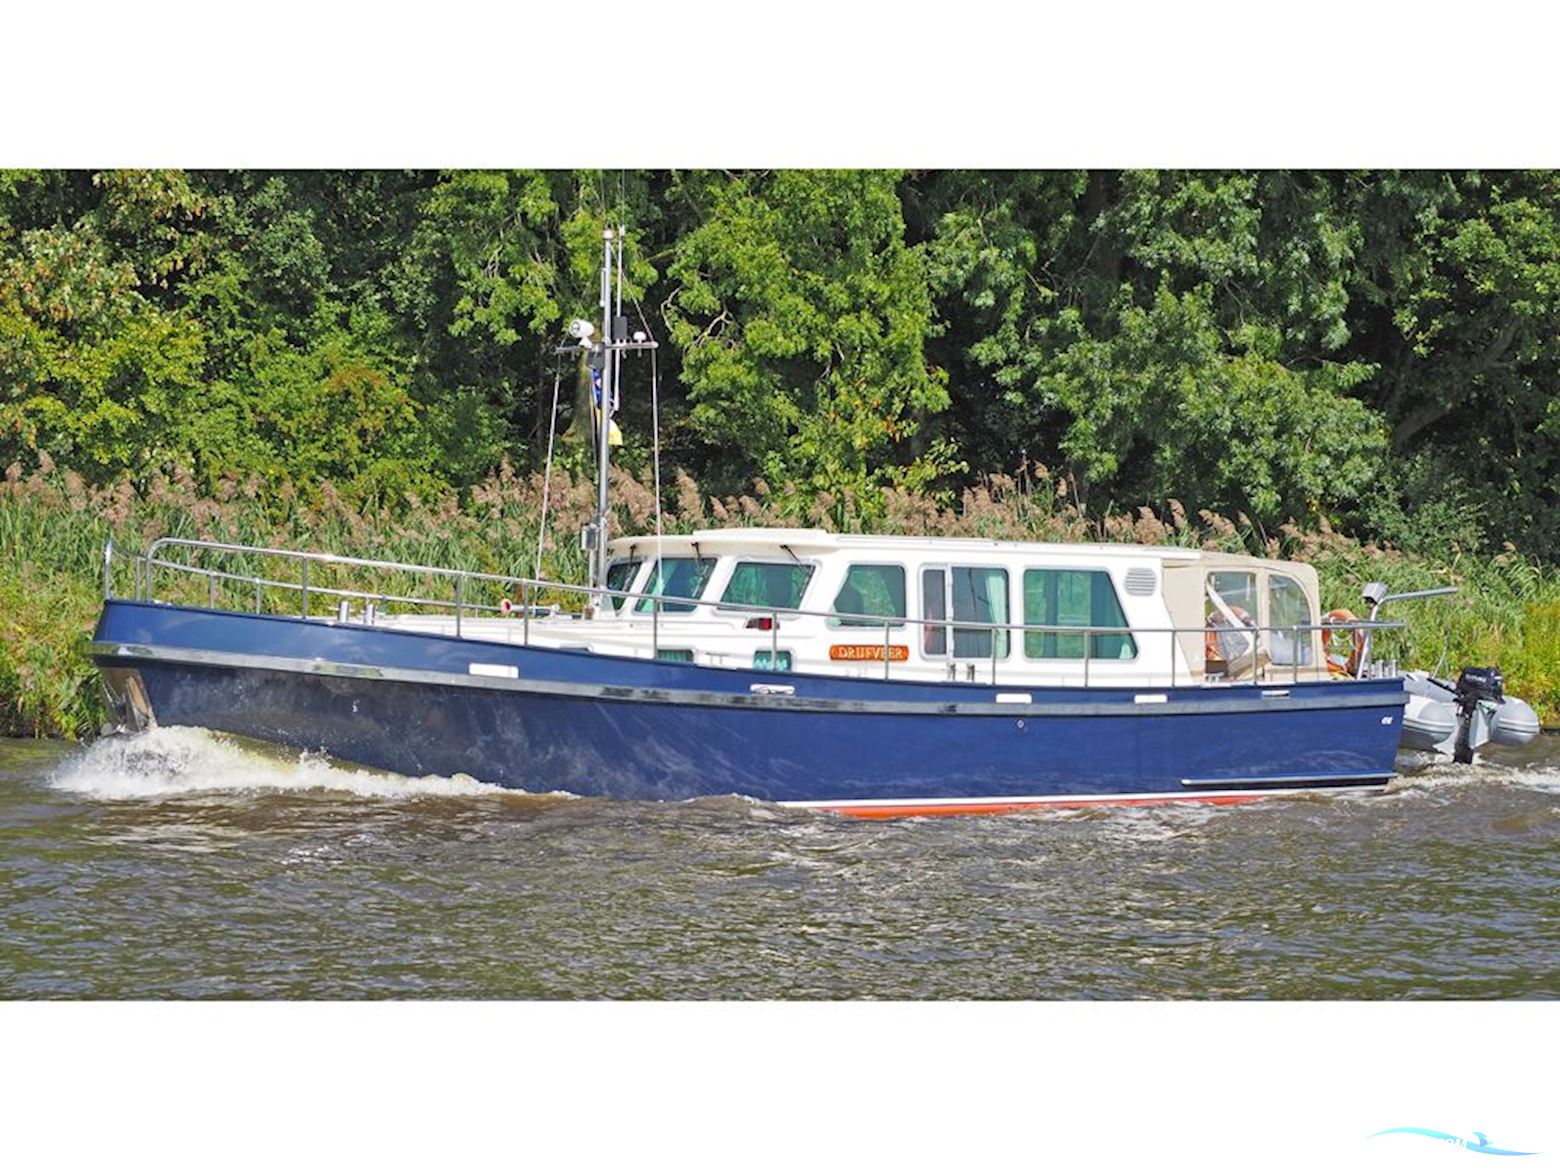 Rondspant Stevenvlet 45 VE Motor boat 2011, with Perkins Sabre engine, The Netherlands